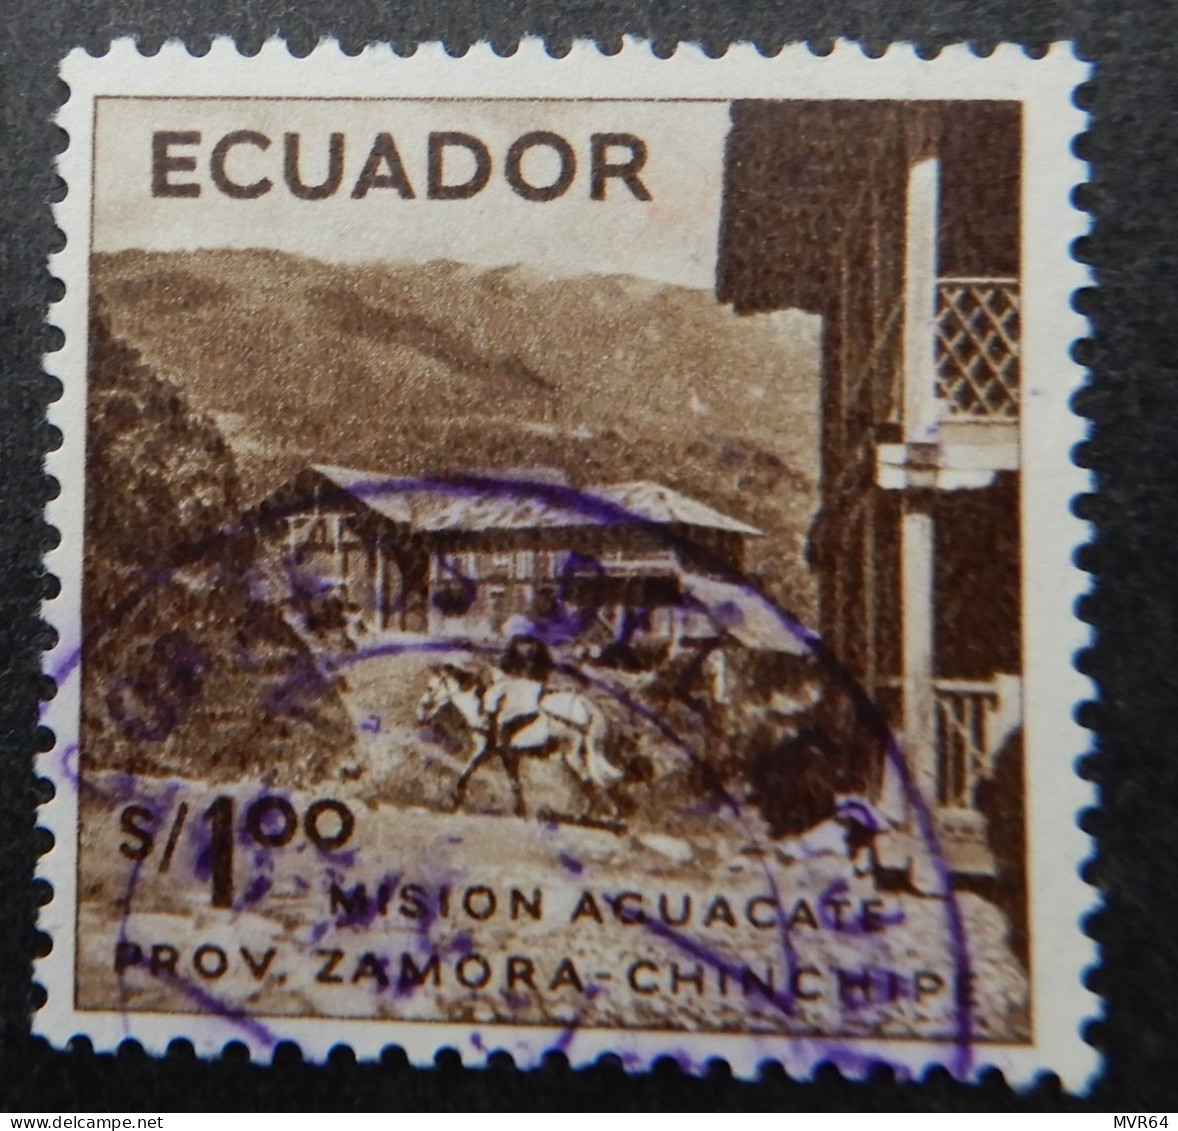 Ecuador 1955 (2b) Mision Acuacate - Equateur